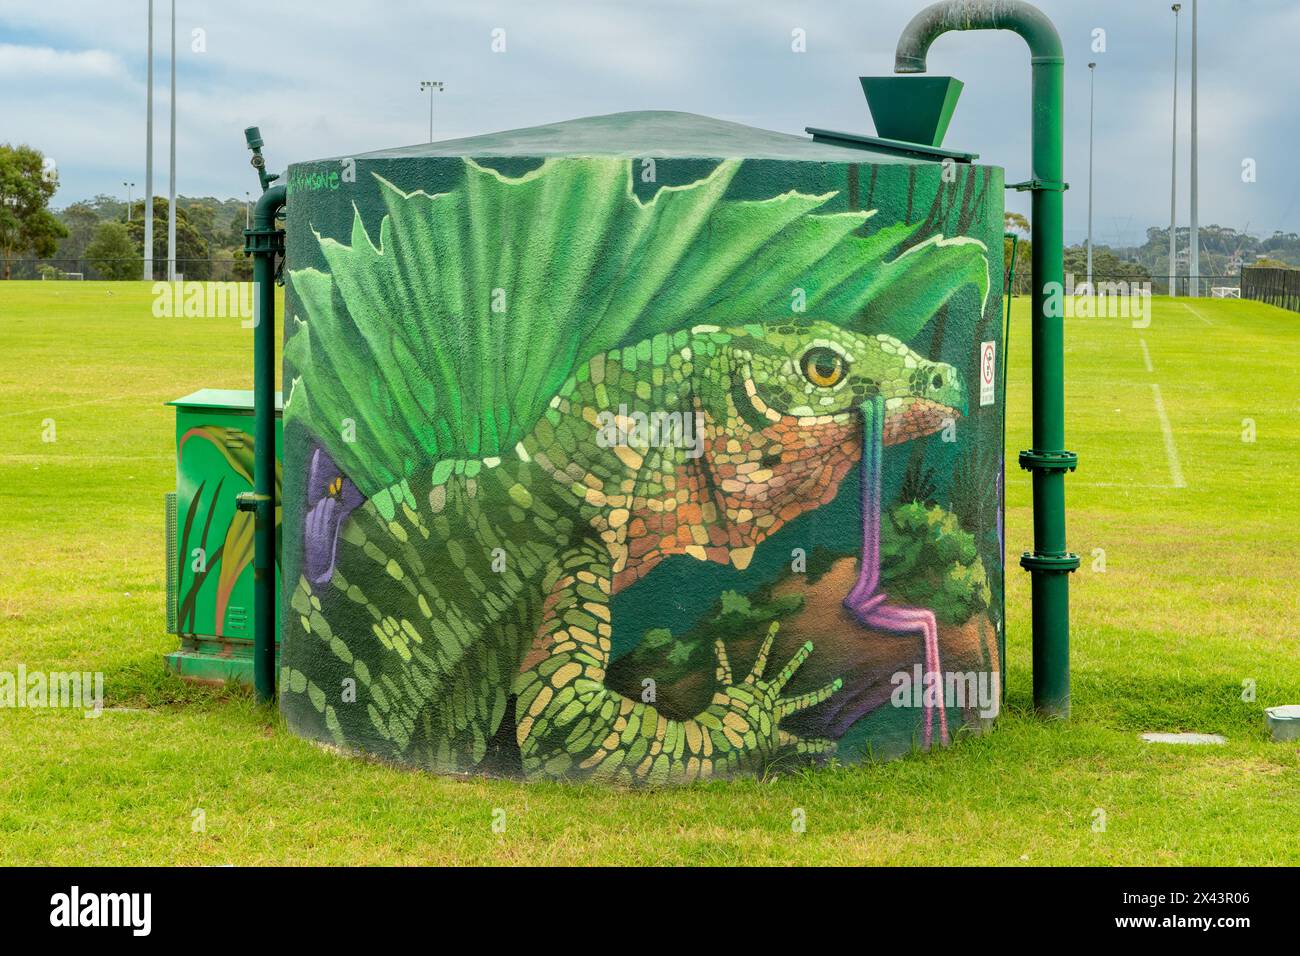 Water Tank Art par Scott Nagy et Krimsone, Barden Ridge, NSW, Australie Banque D'Images